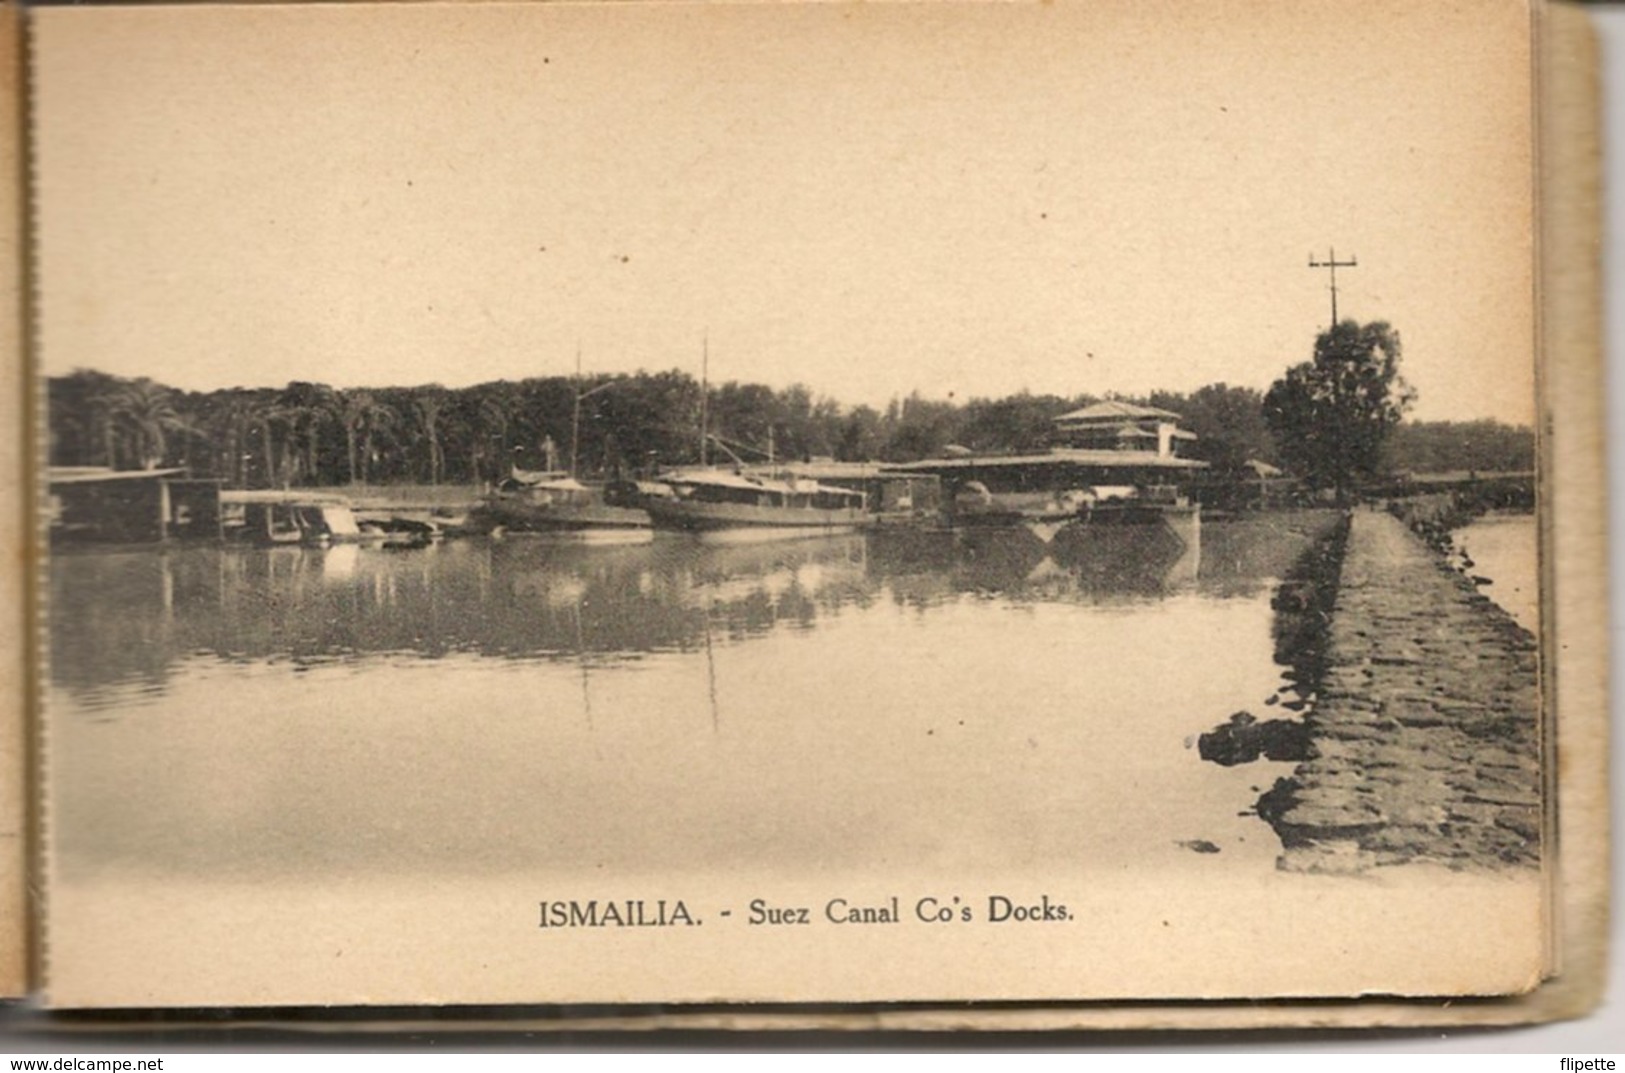 L74A518 - Egypte Canal de Suez & Ismailia - 12 cartes postales détachables - Edition 1925 - Vitta & Cie